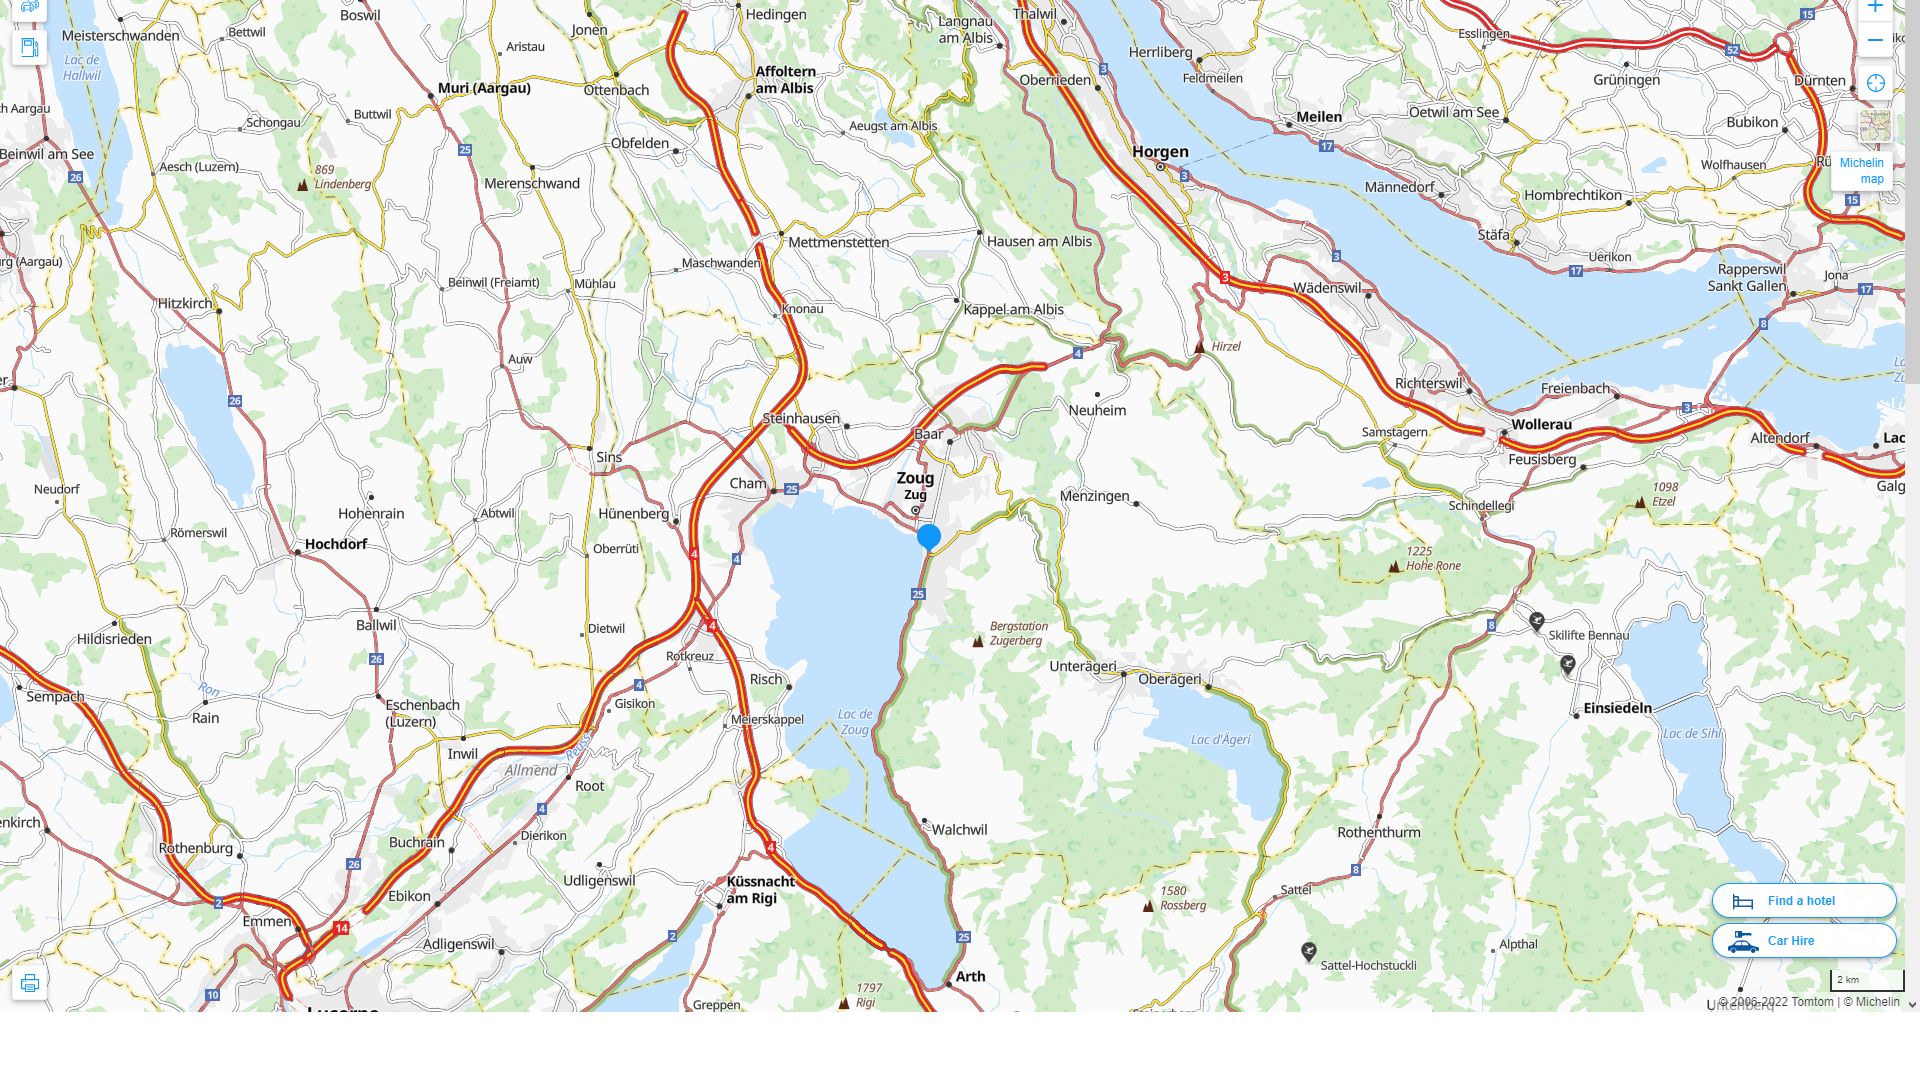 Zug Suisse Autoroute et carte routiere